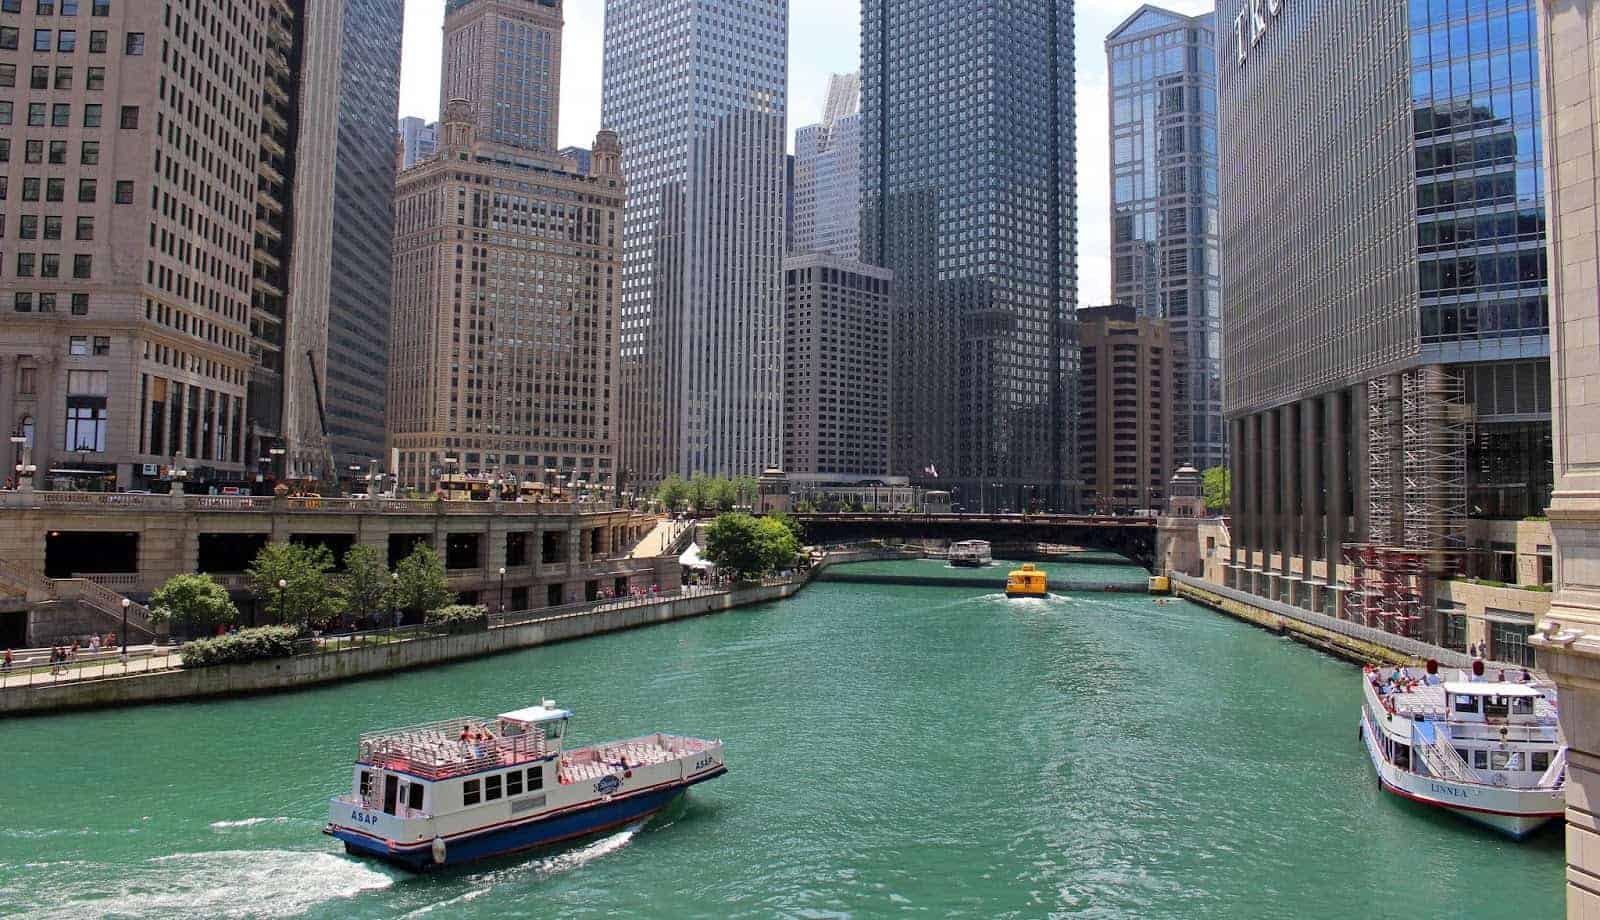 شيكاغو , رحلة نهرية بين الصروح المعمارية